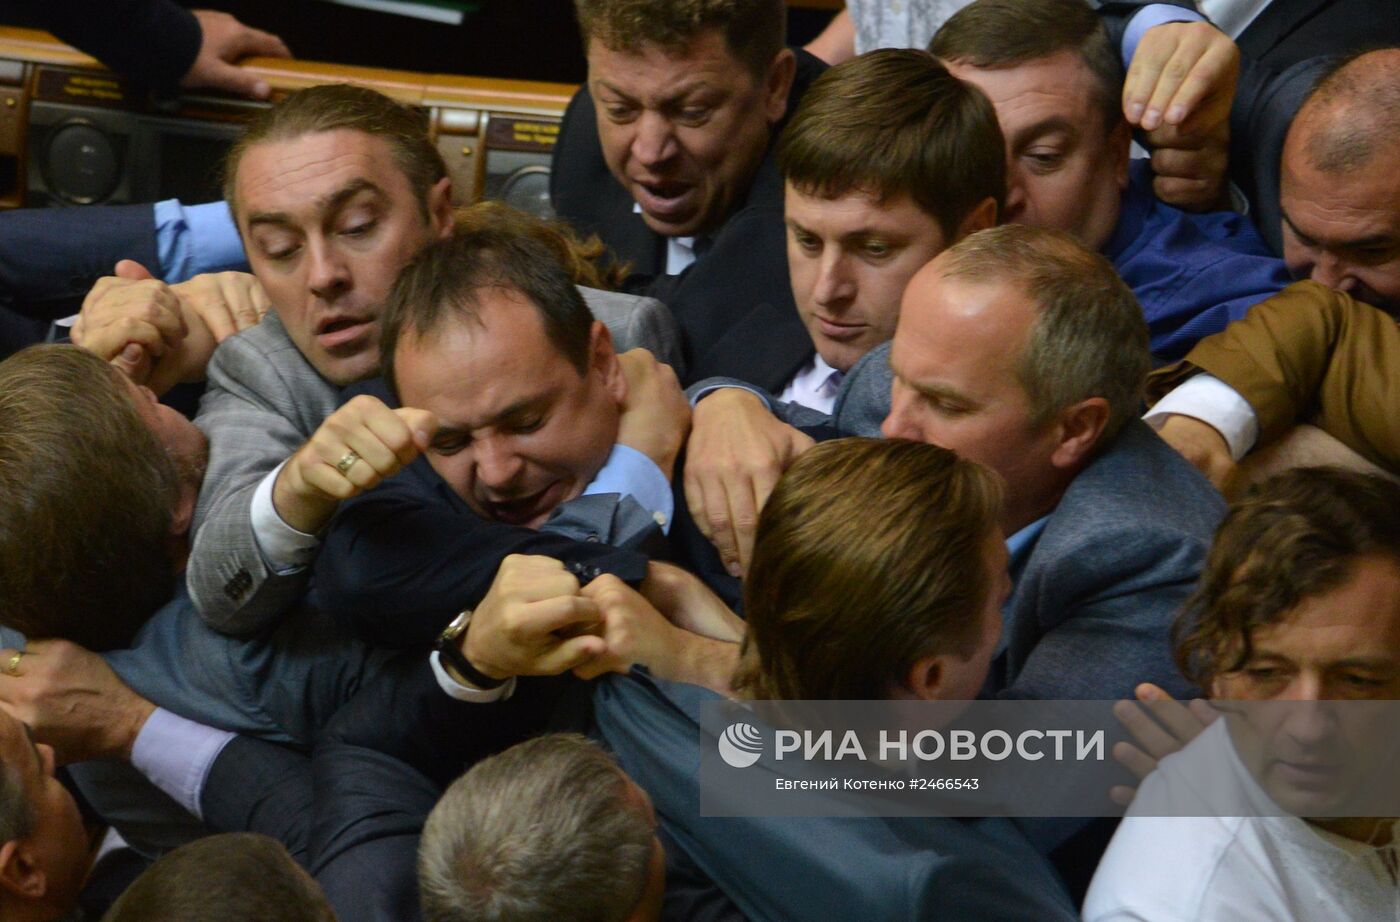 Верховная Рада утвердила указ президента Украины "О частичной мобилизации"